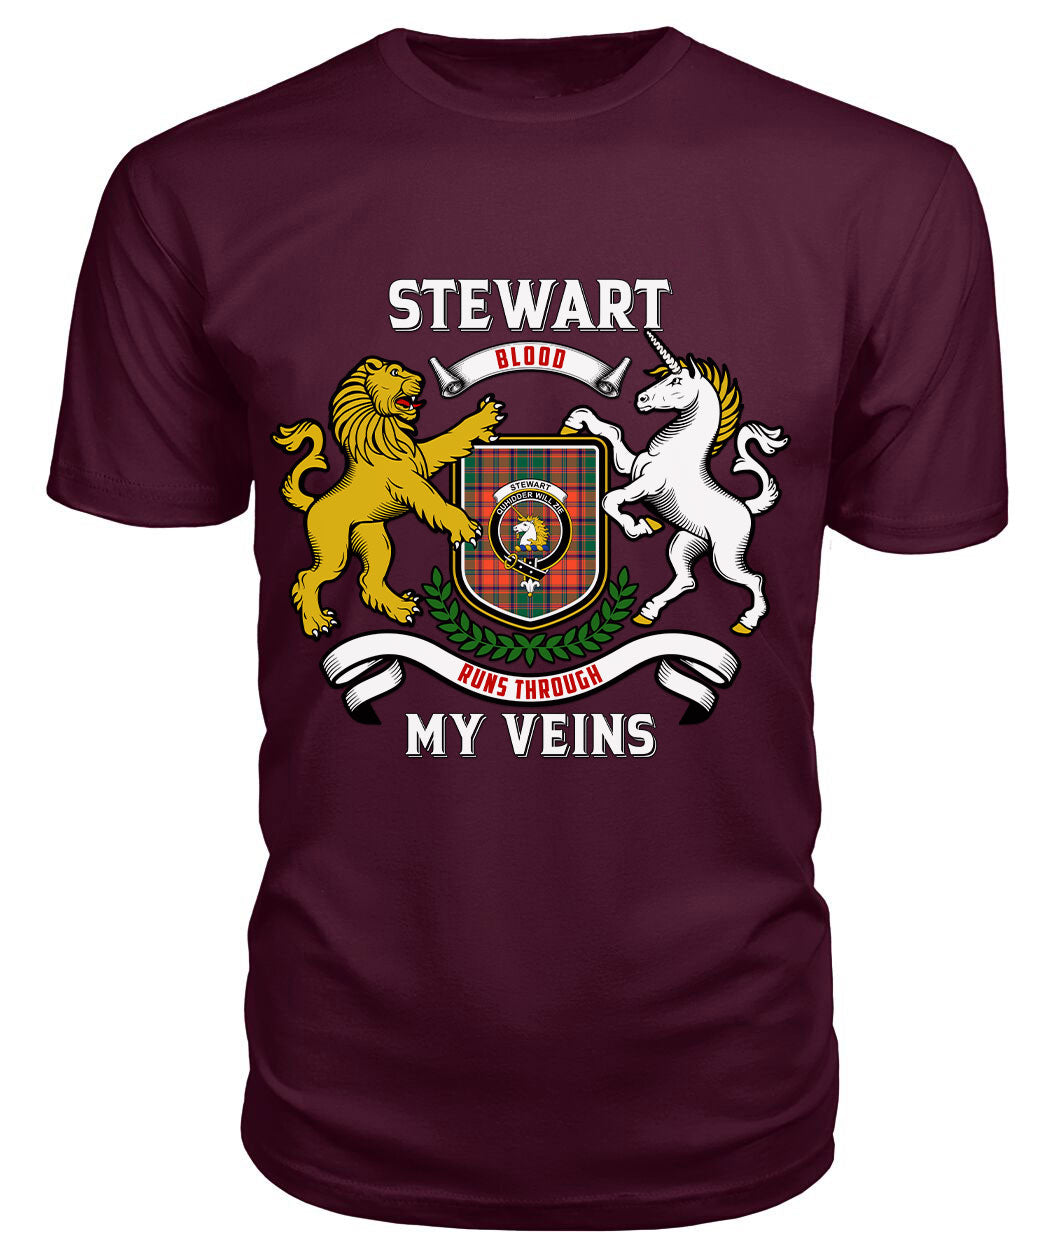 Stewart of Appin Ancient Tartan Crest 2D T-shirt - Blood Runs Through My Veins Style